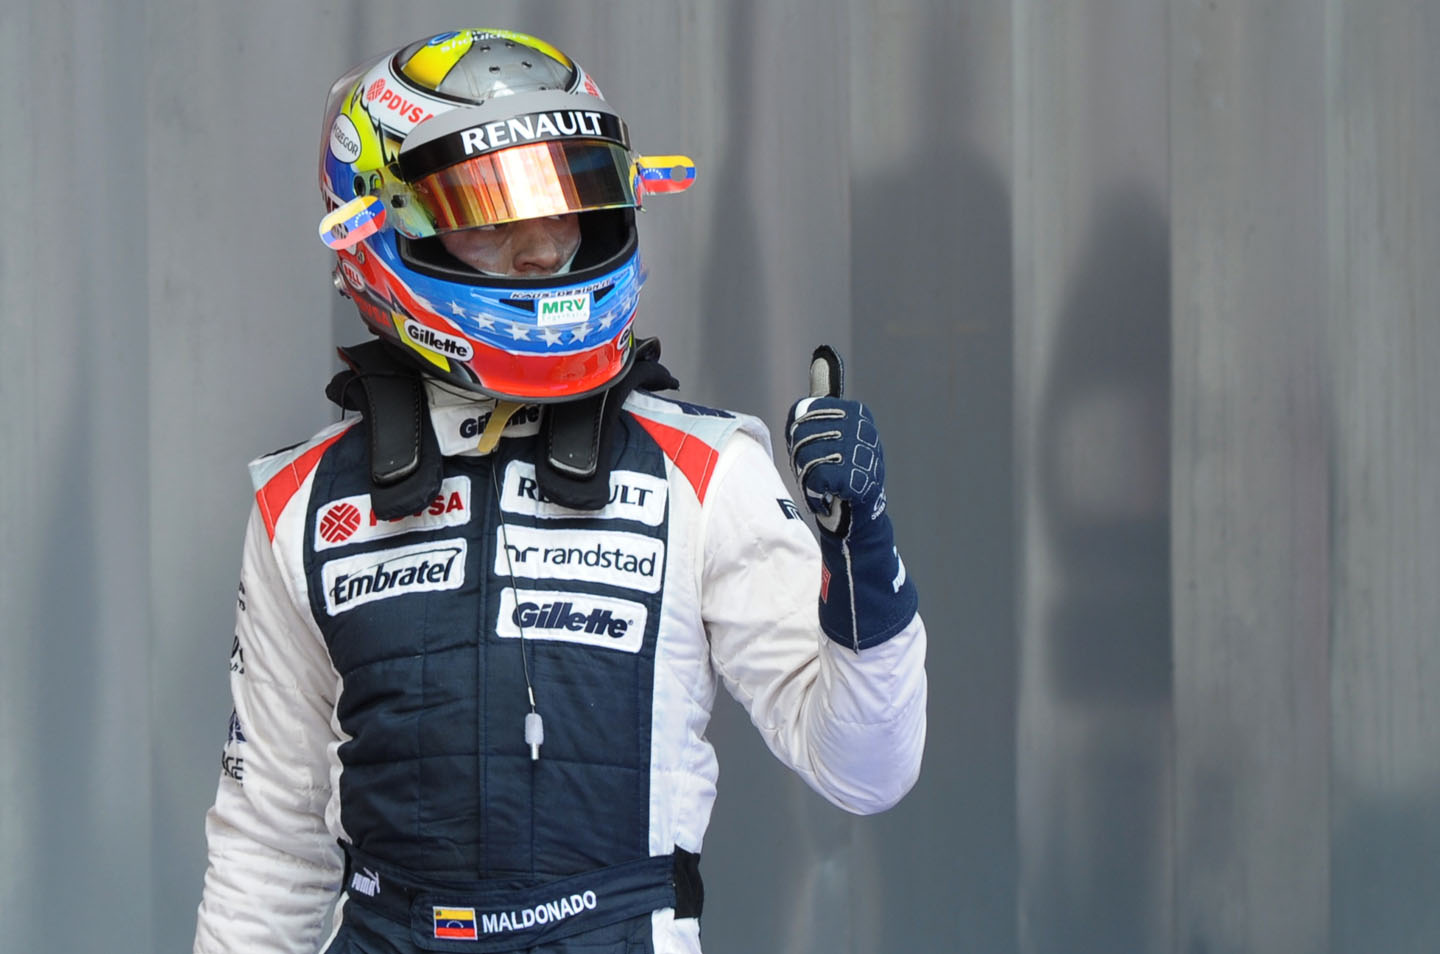 Maldonado sumó su primer punto terminando en el décimo lugar en el GP Hungría